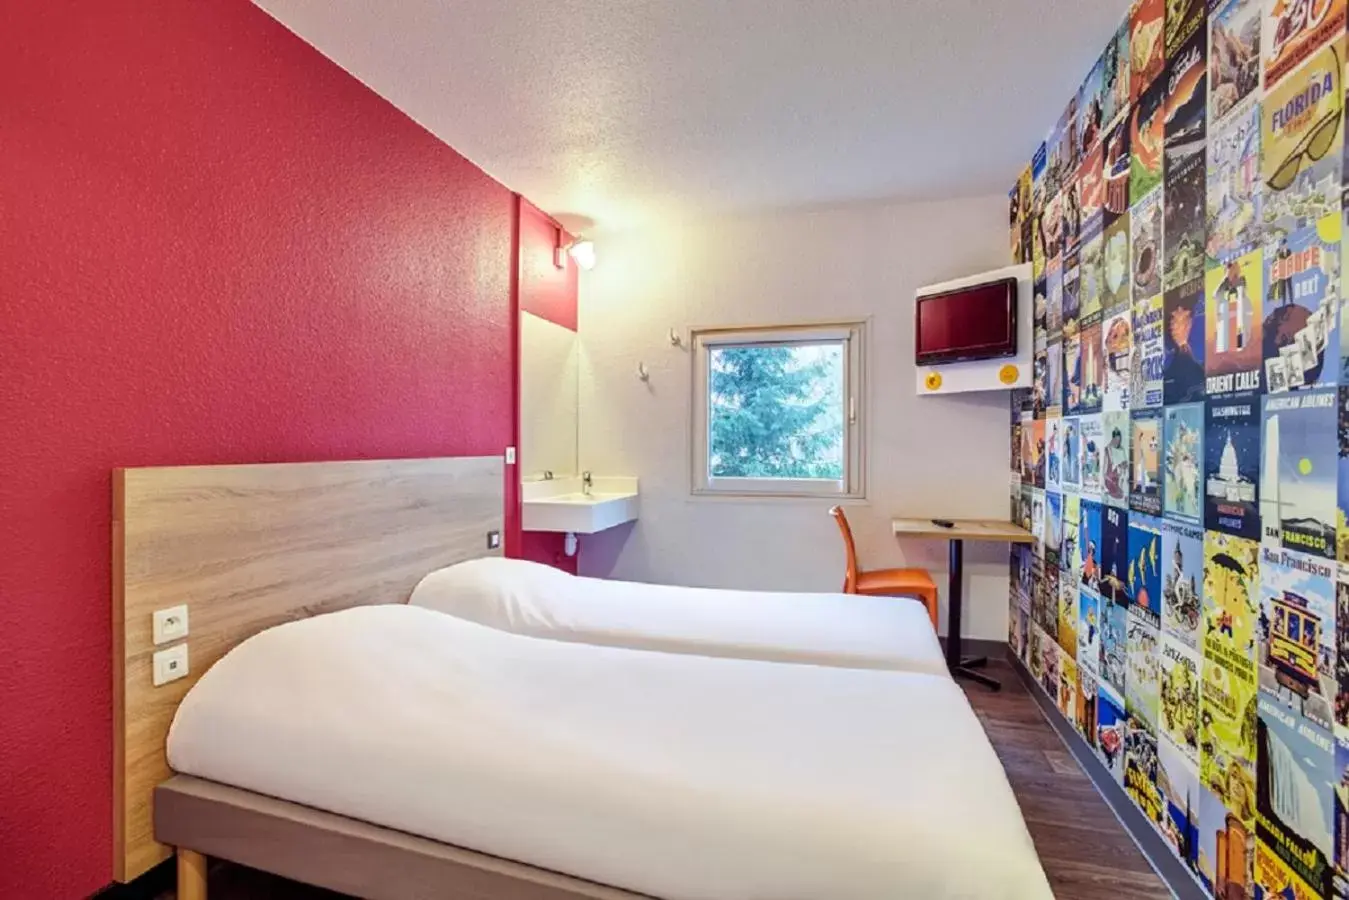 Bed in hotelF1 Fréjus Roquebrune sur Argens